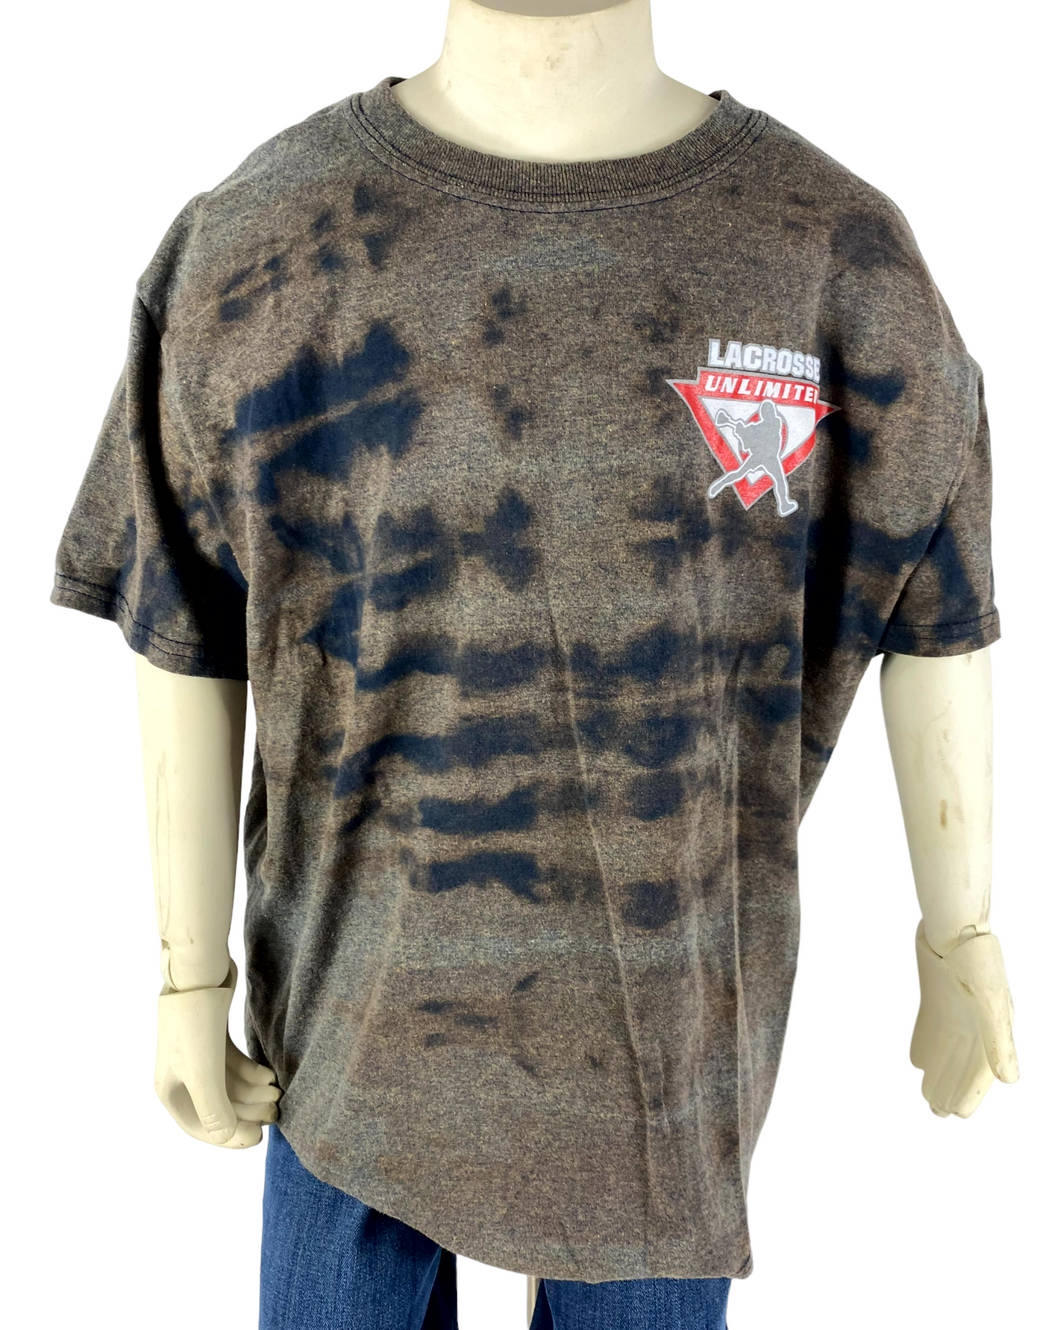 Lacrosse Unlimited Kids T-Shirt - XL (12/14)